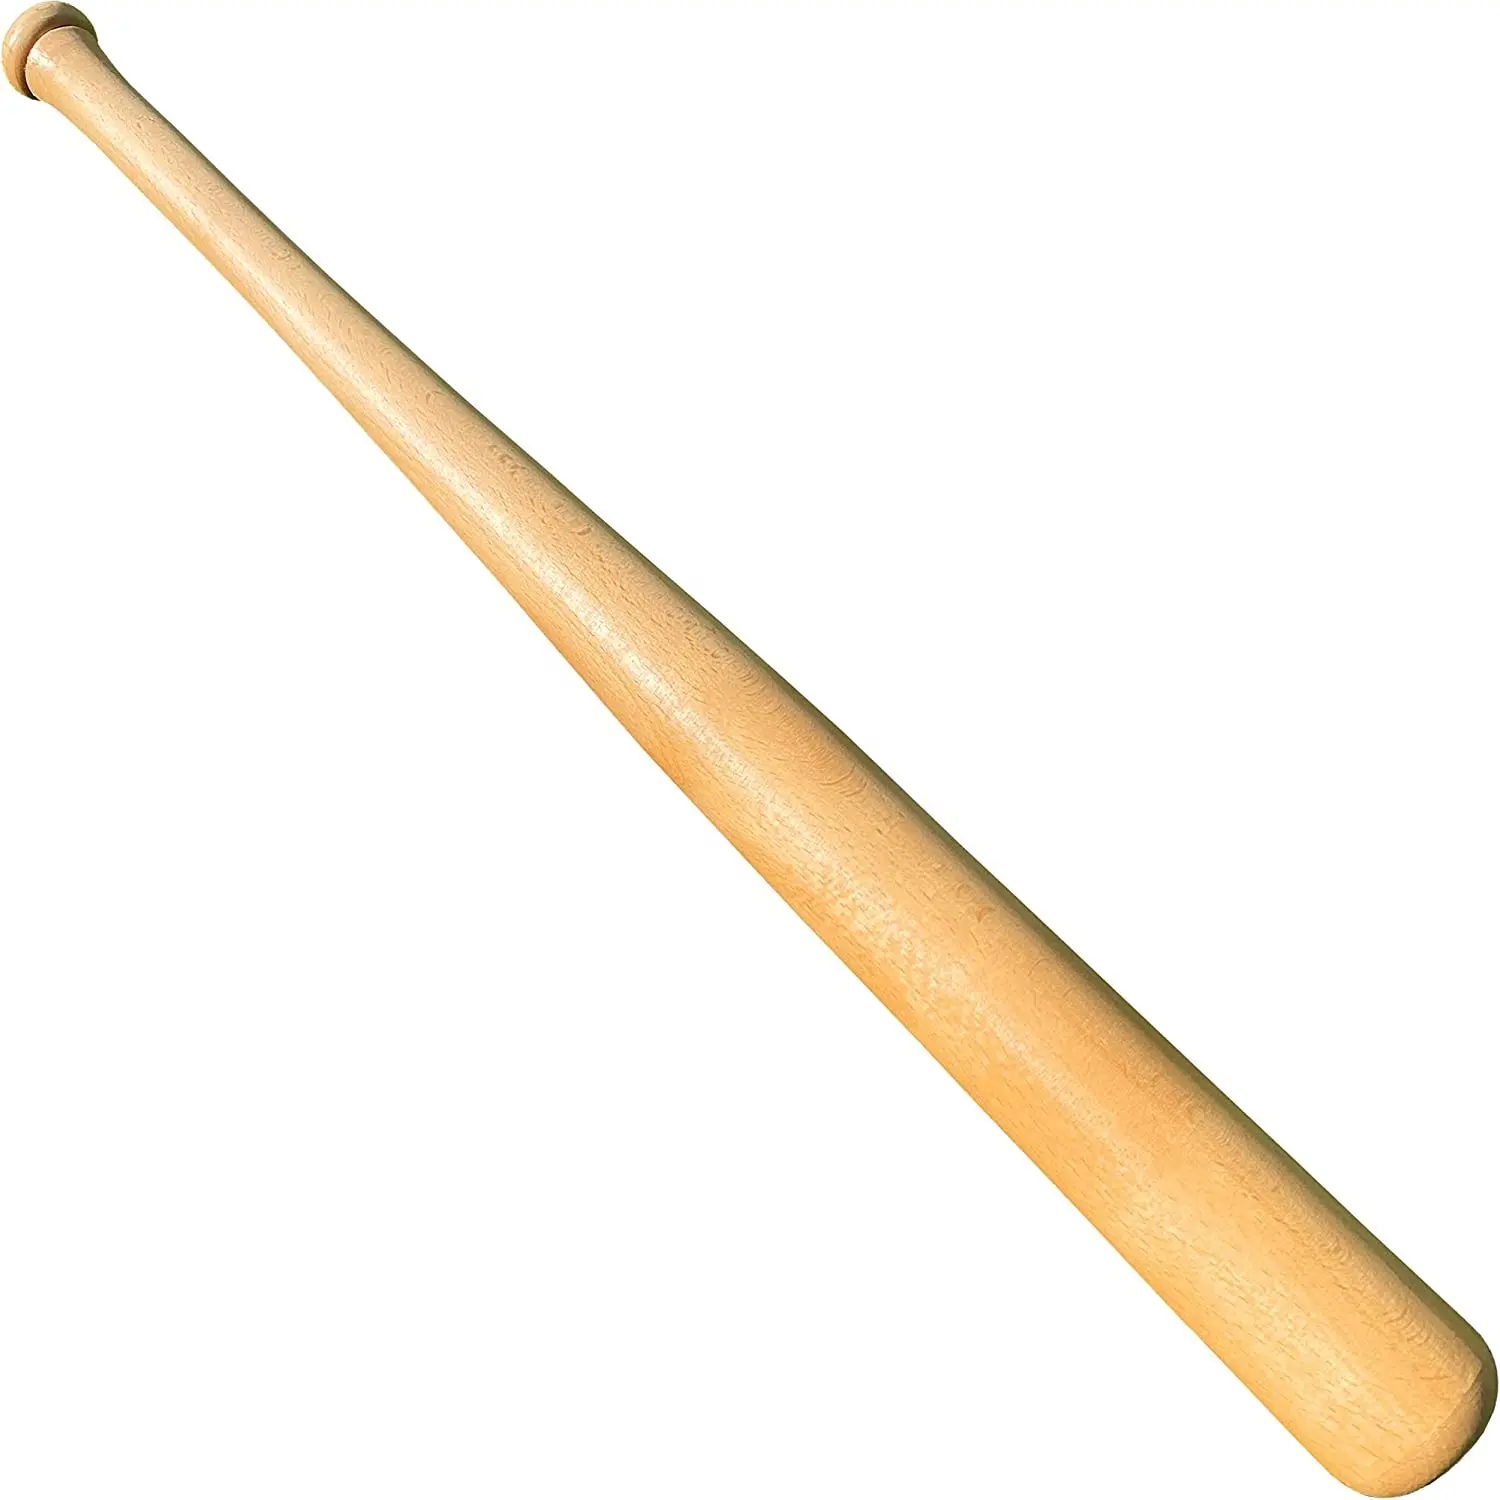 Barato profissional do treino profissional madeira bico, base de madeira batedor de baseball inflável